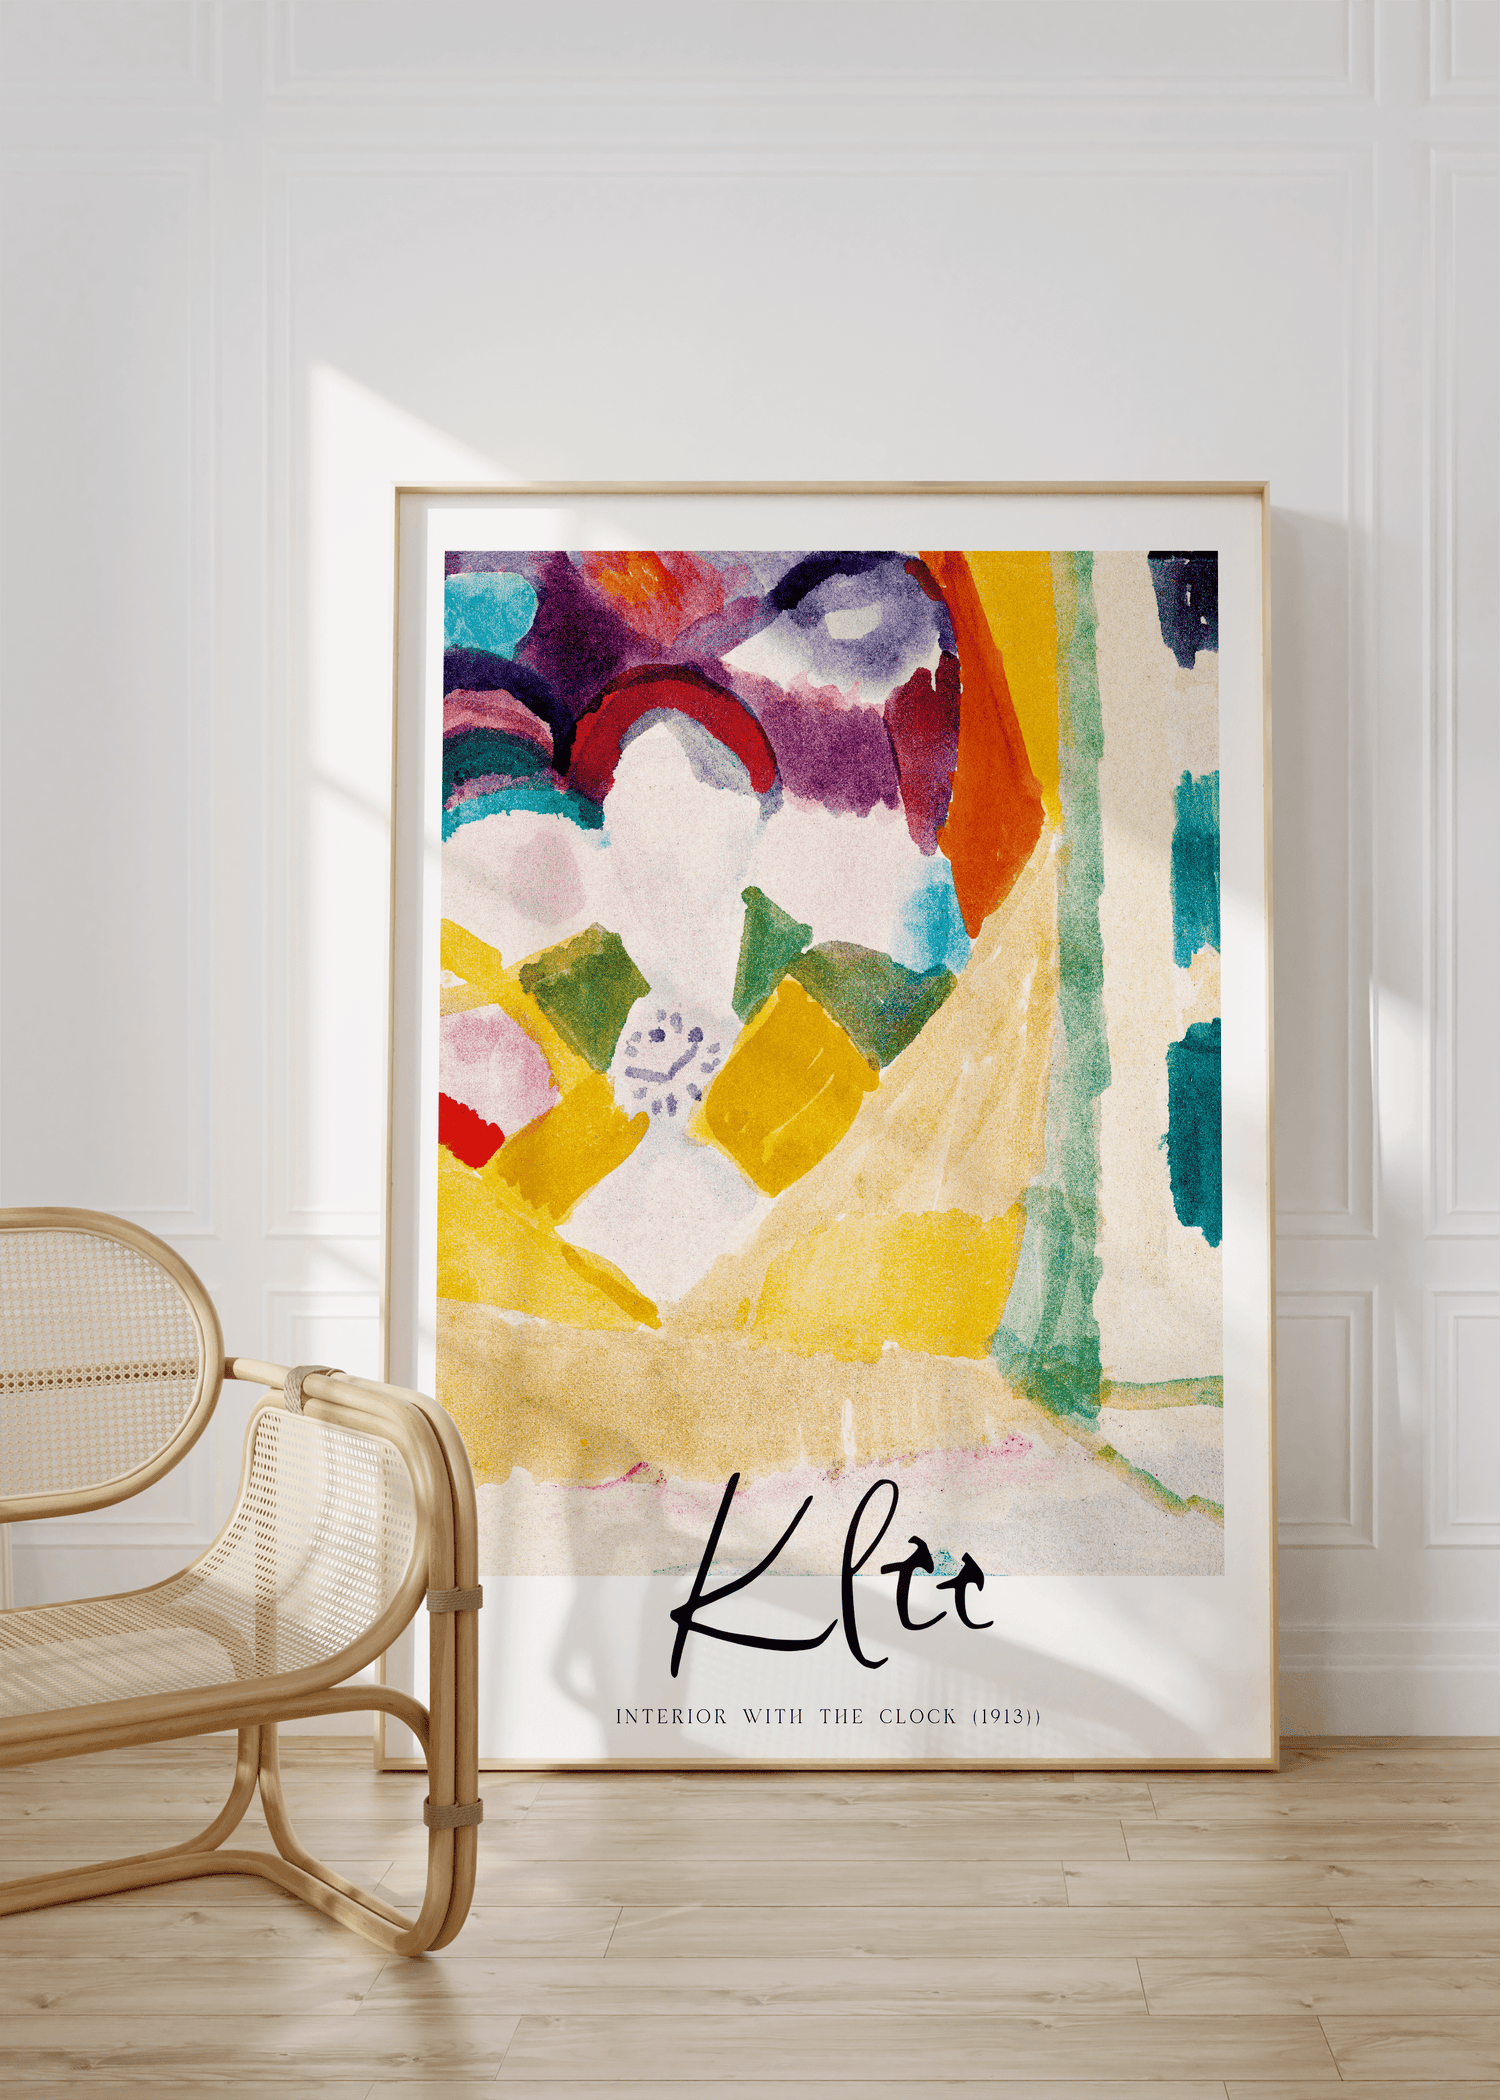 Paul Klee Unframed Poster